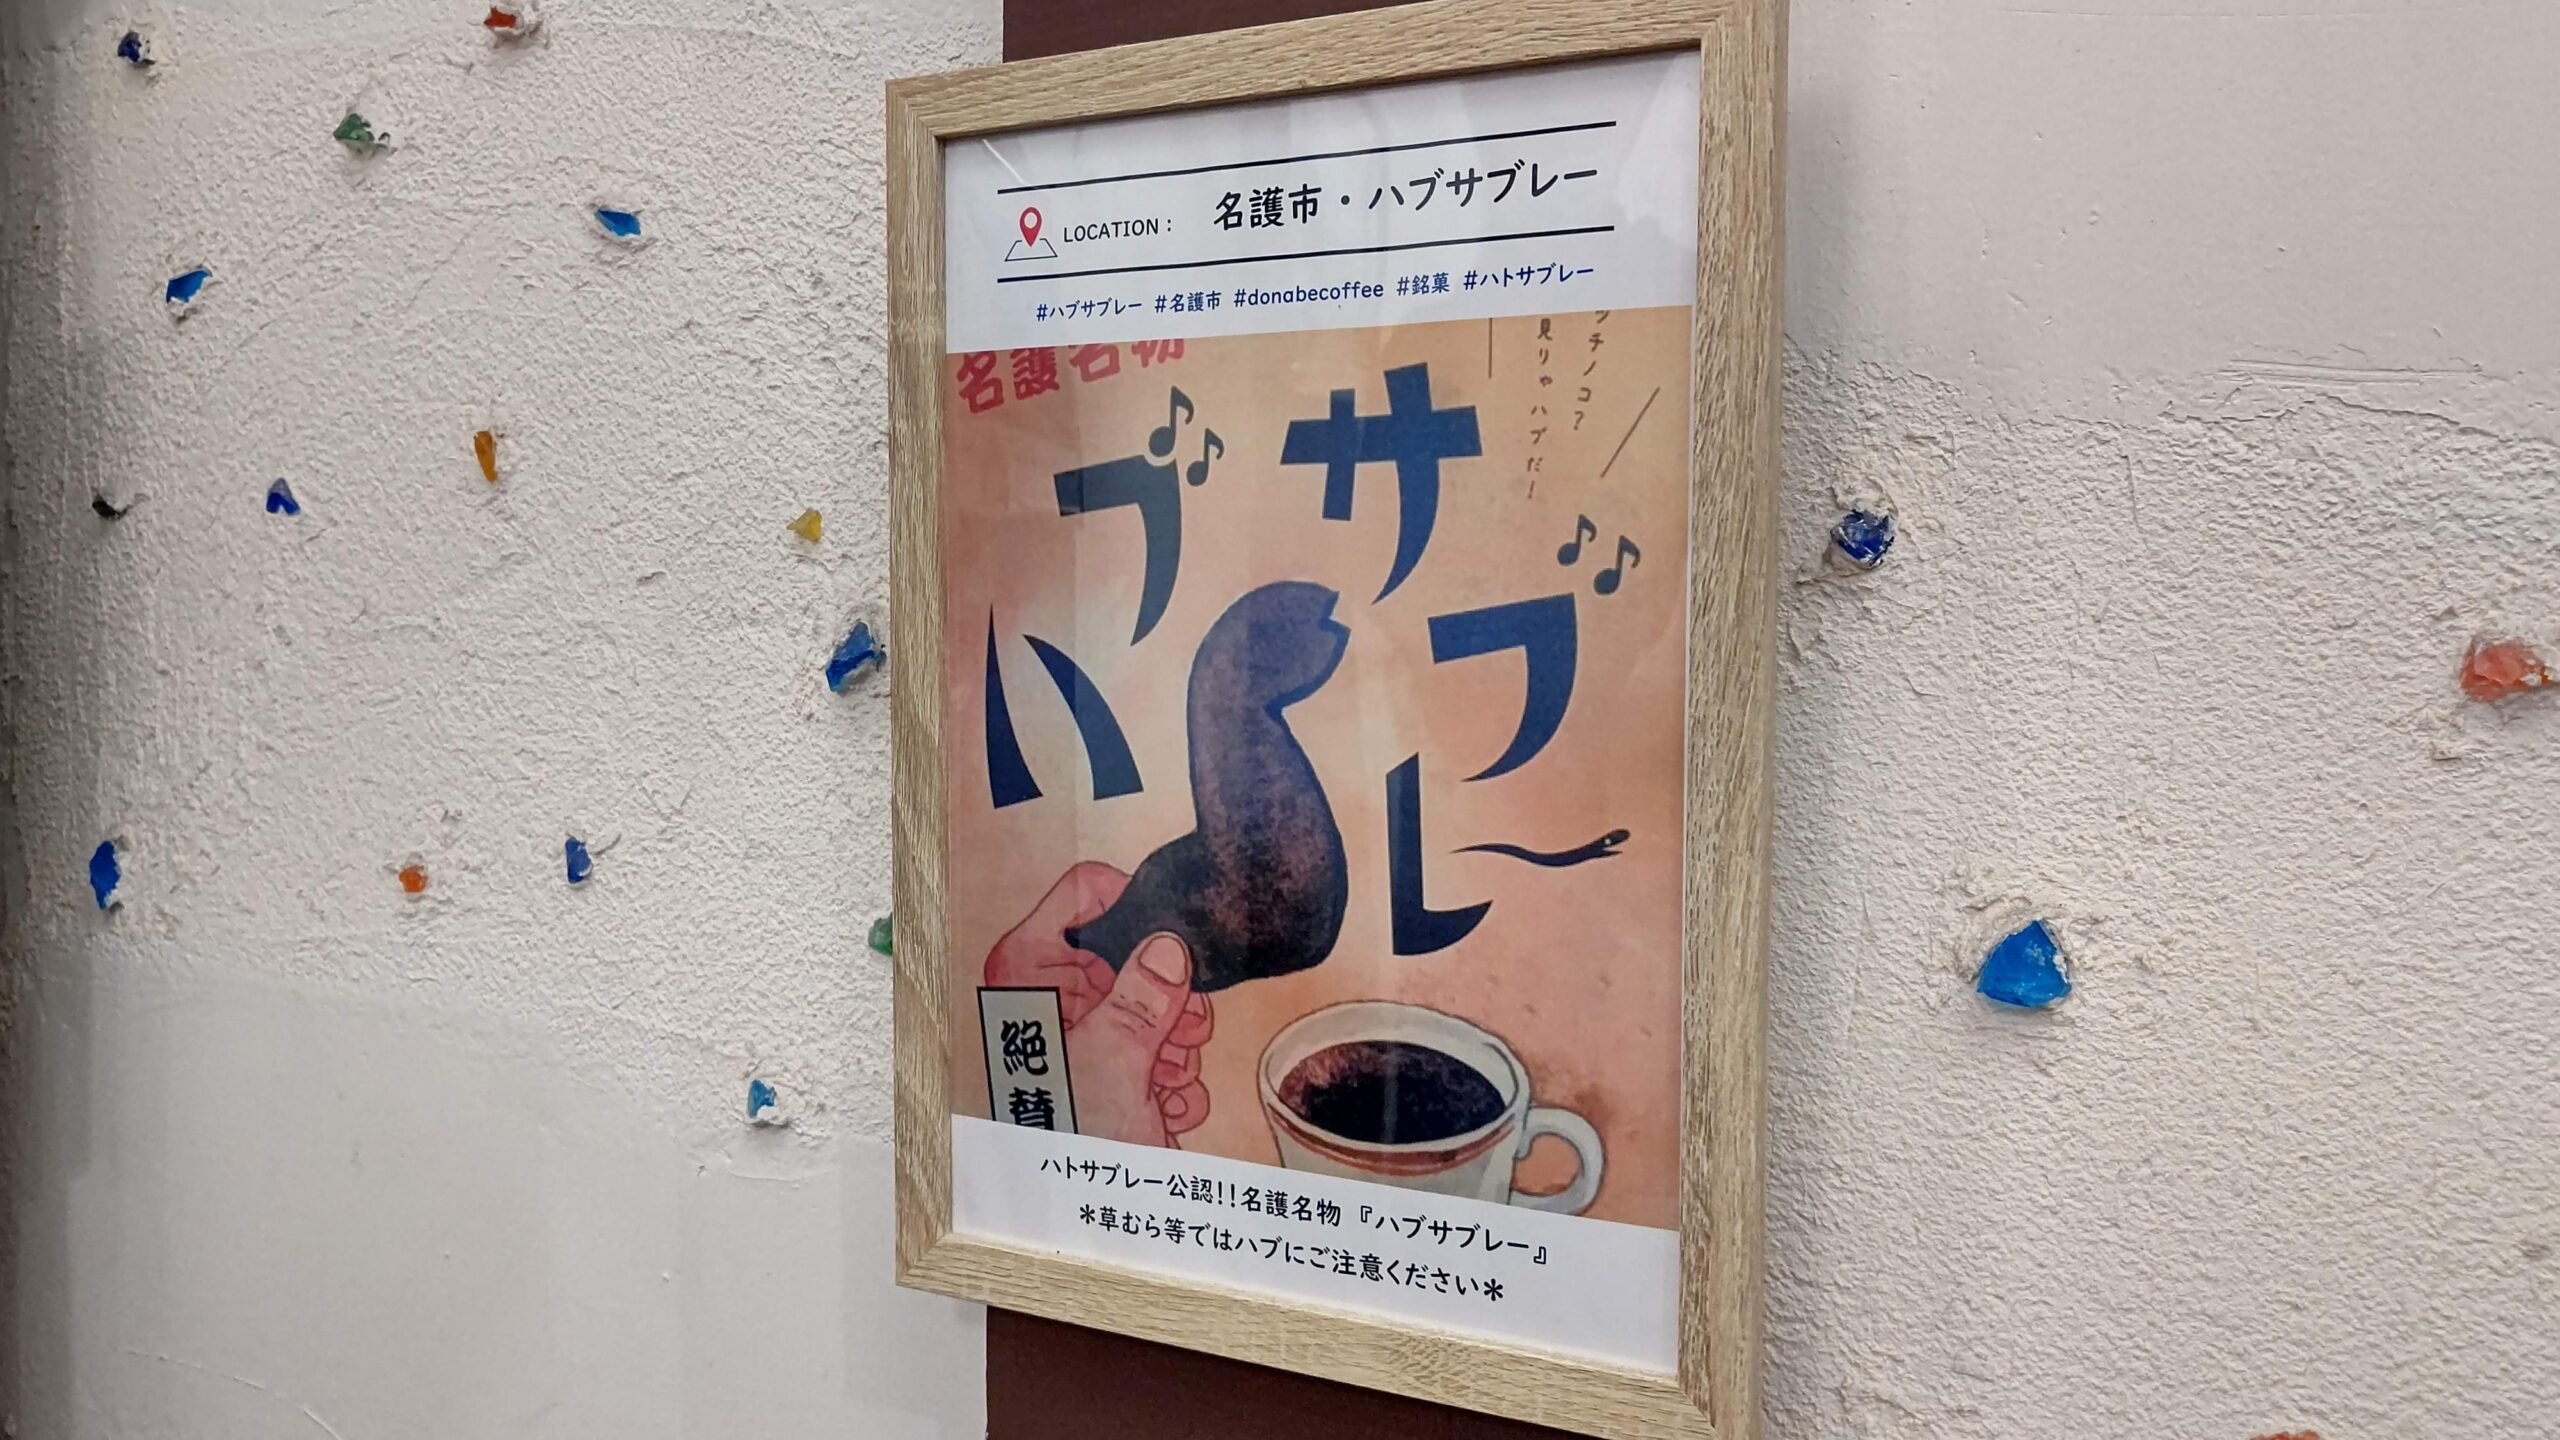 沖縄県那覇市 島しゃぶしゃぶNAKAMA ナカマ donabe-coffee ハブサブレー